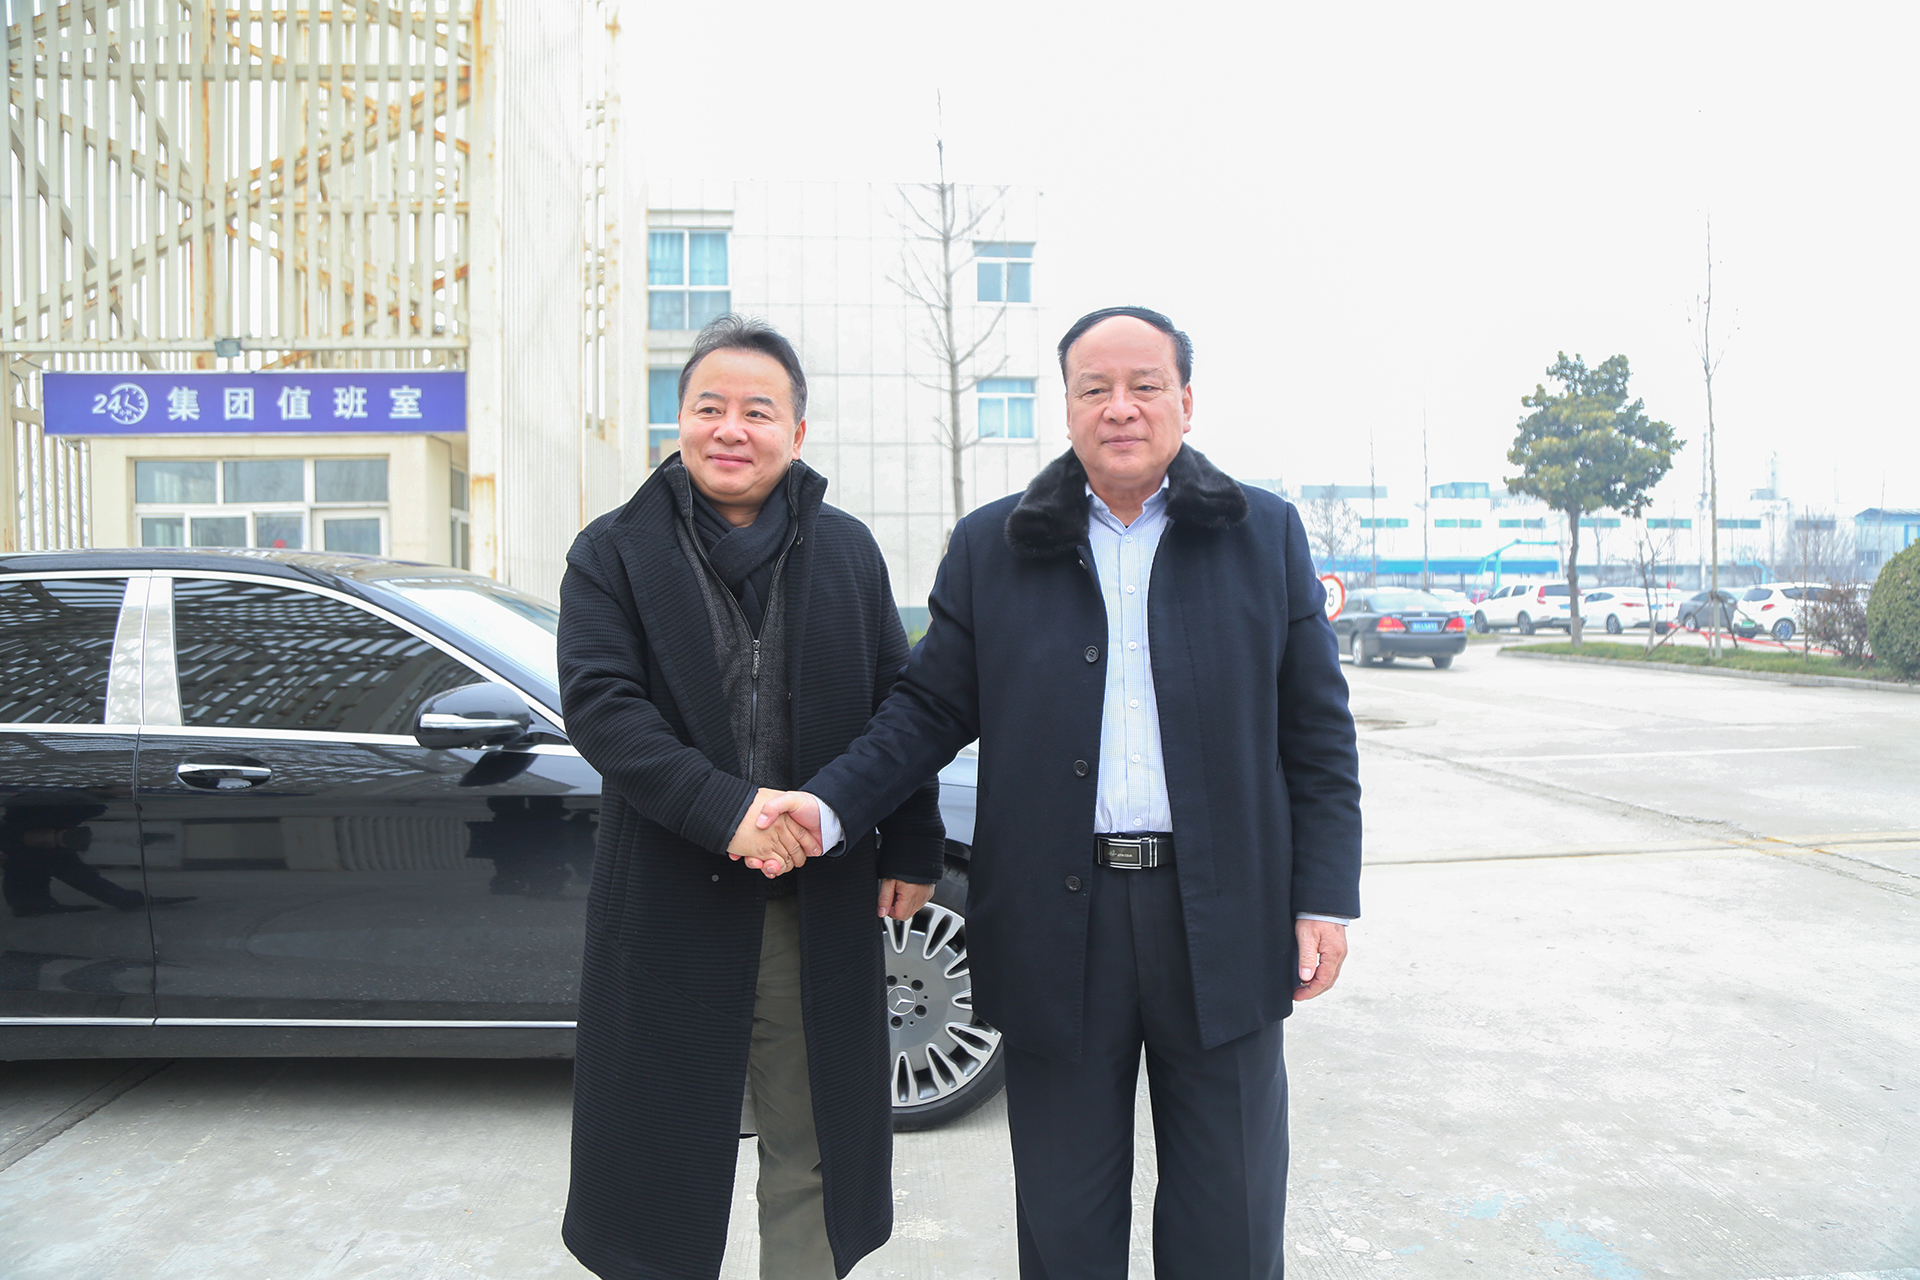 Сердечно приветствуем председателя британской китайской торговой палаты Шао, который посетит China Coal Group